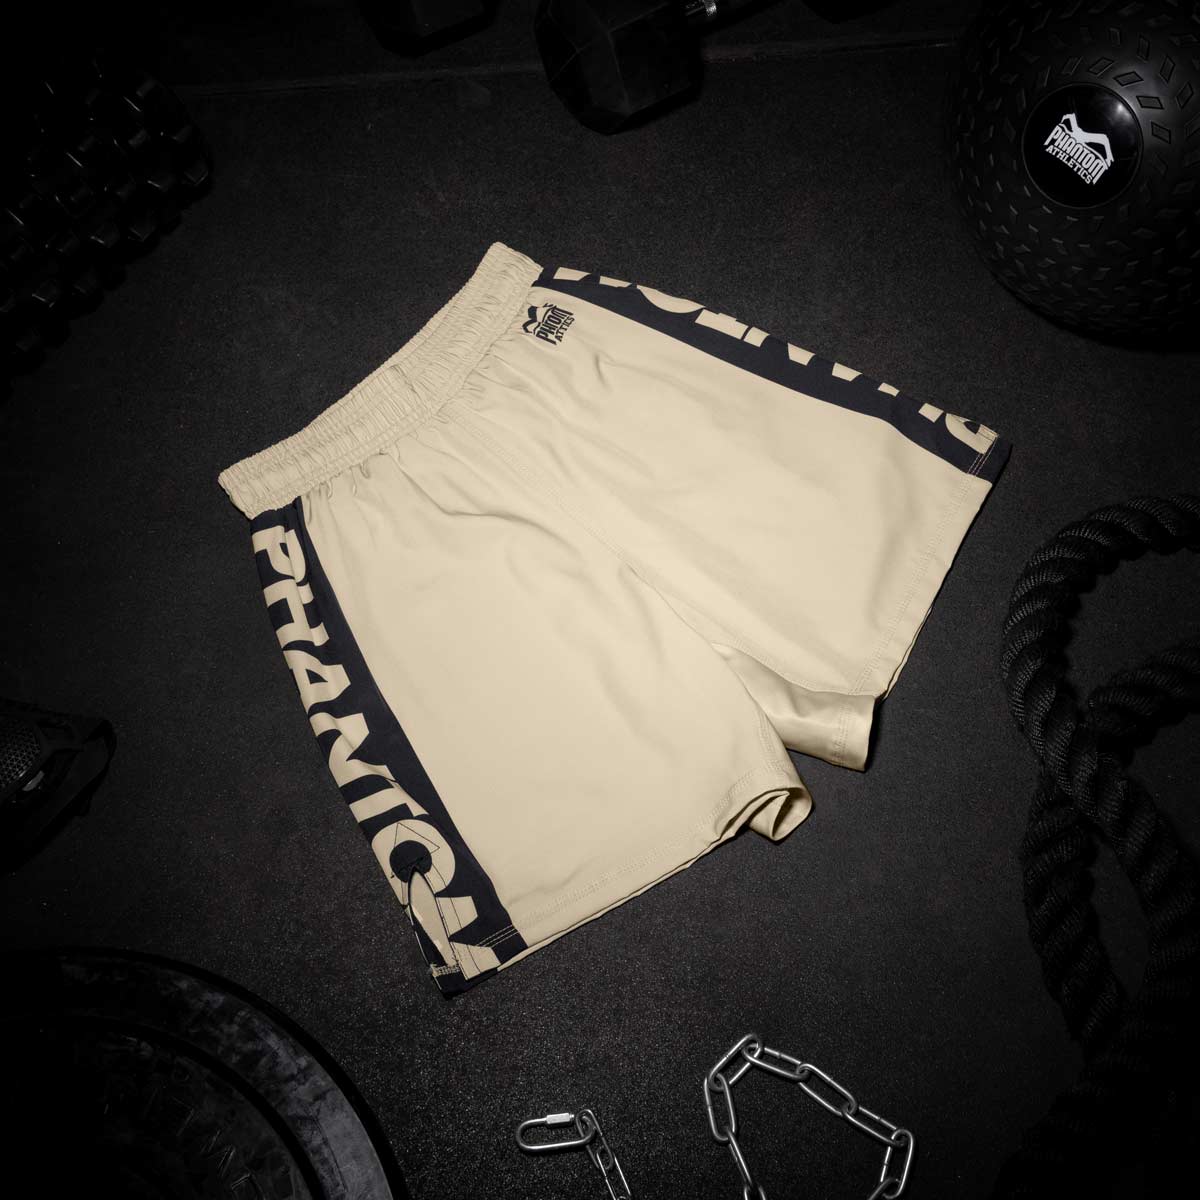 Die Phantom EVO Fightshorts sind die idealen Shorts für deinen Kampfsport. Ganz egal ob MMA, BJJ, Kickboxen oder Muay Thai. Durch das ultraleichte, elastische, reissfeste und schnelltrocknende Material bieten sie die volle Bewegungsfreiheit und maximalen Komfort, so dass du dich ganz auf deinen Fight oder dein Training konzentrieren kannst. Hier in der Farbe Sand Beige.